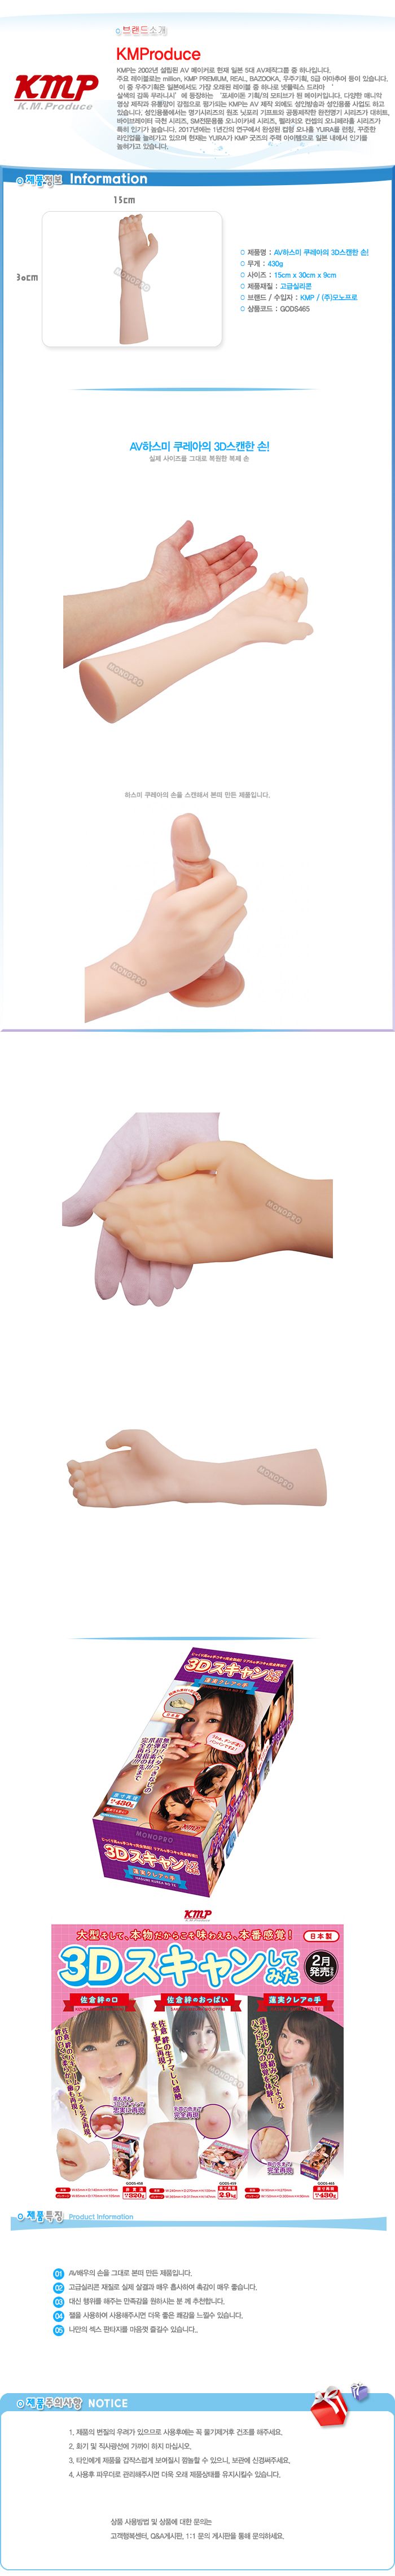 AV배우 하스미 쿠레아의 손 (3D 스캔)